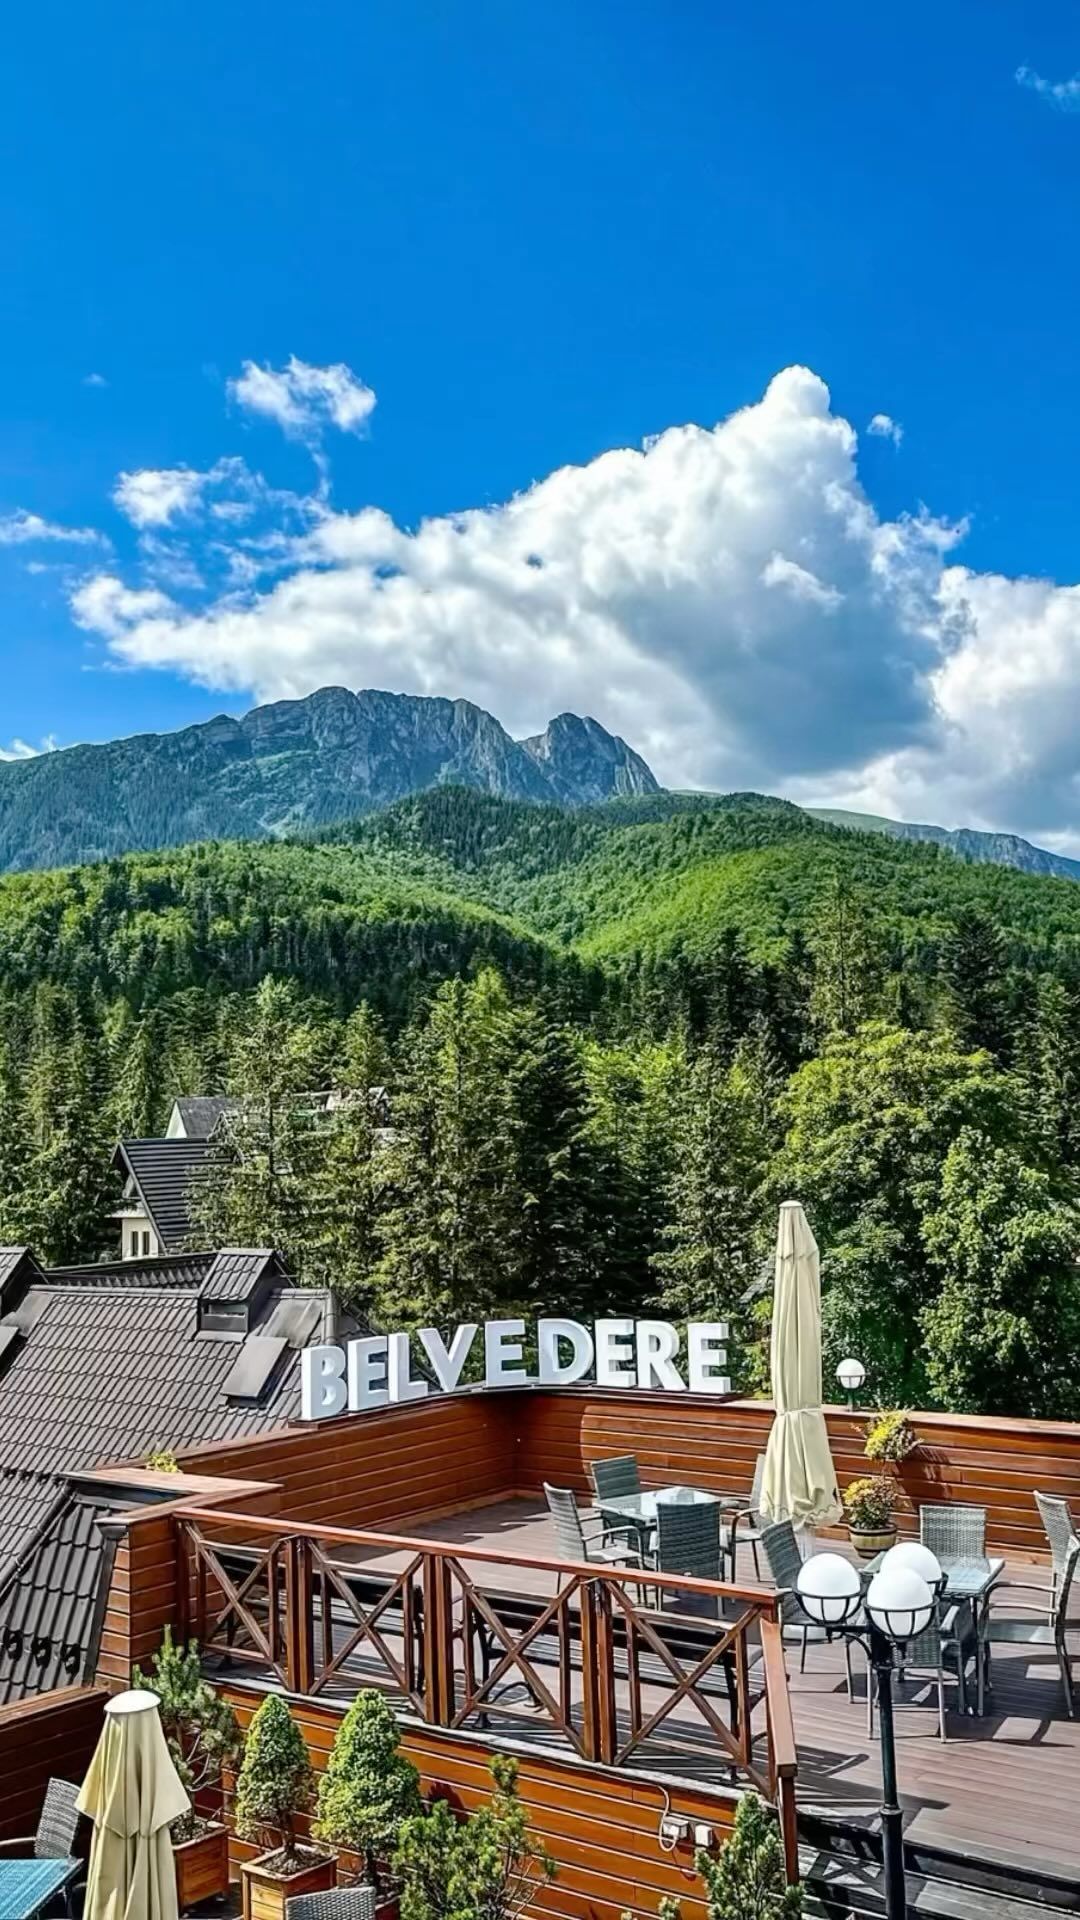 ALERT SUPER CENY z okazji jesiennej wyprzedaży na Travelist.pl 🔥
Upolujcie jeszcze taniej pobyt w tym 4* hotelu u wrót tatrzańskiej doliny.
Link do oferty w BIO ➡️ @Travelist.pl  #widoknagóry #mountainview #viewpoint #hotel #belvedere #zakopane #tatry #giewont #GwarancjaNajlepszejCenynaTravelist #belvederehotel @hotelbelvederezakopane #tatry 
 #alertsuperceny